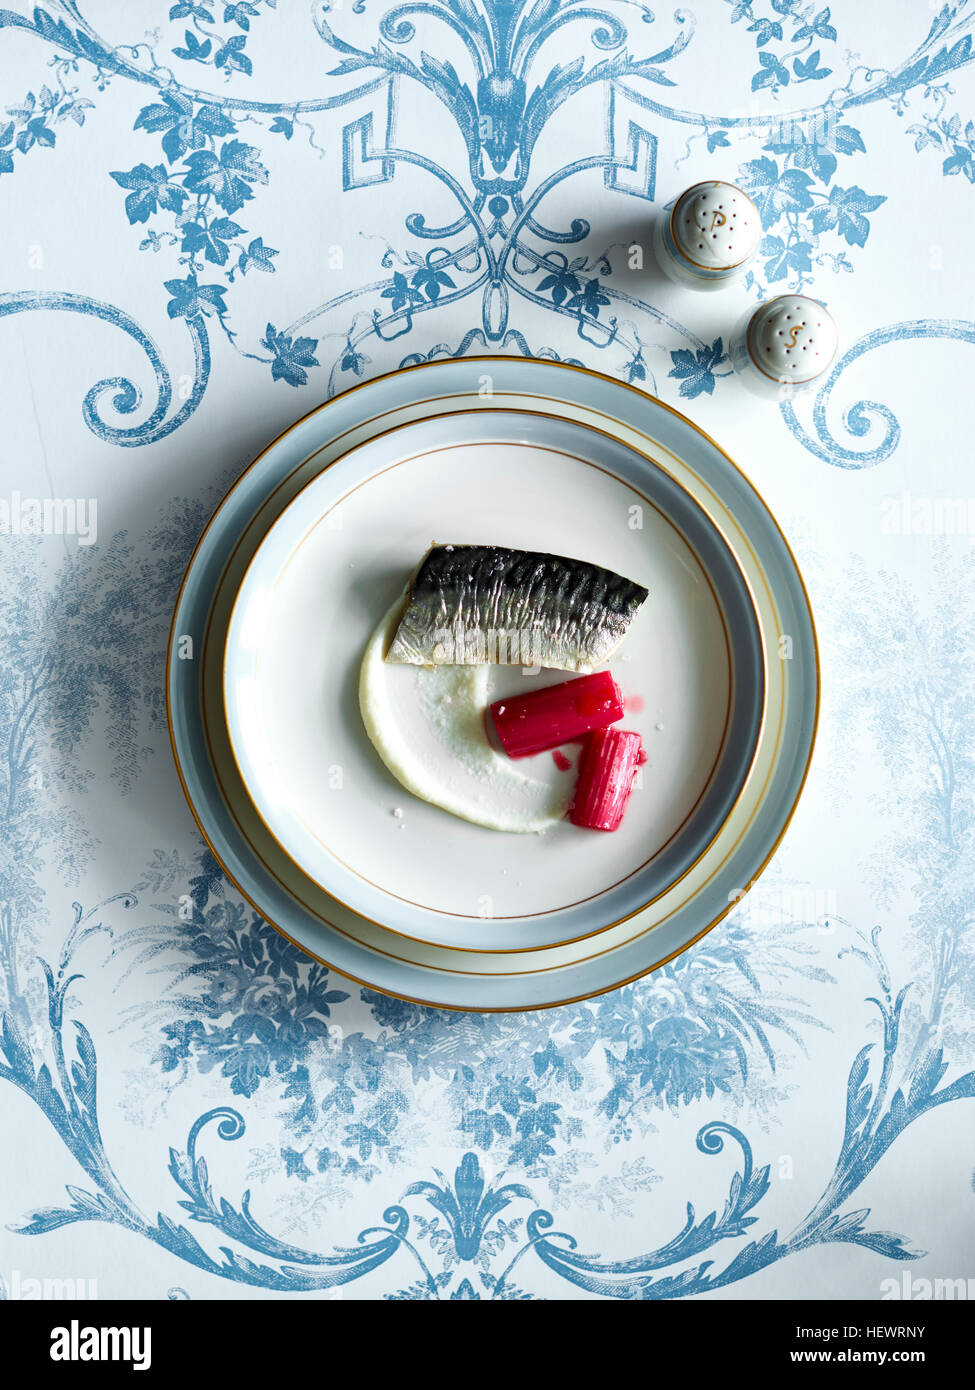 Nouvelle cuisine fish dish Stock Photo